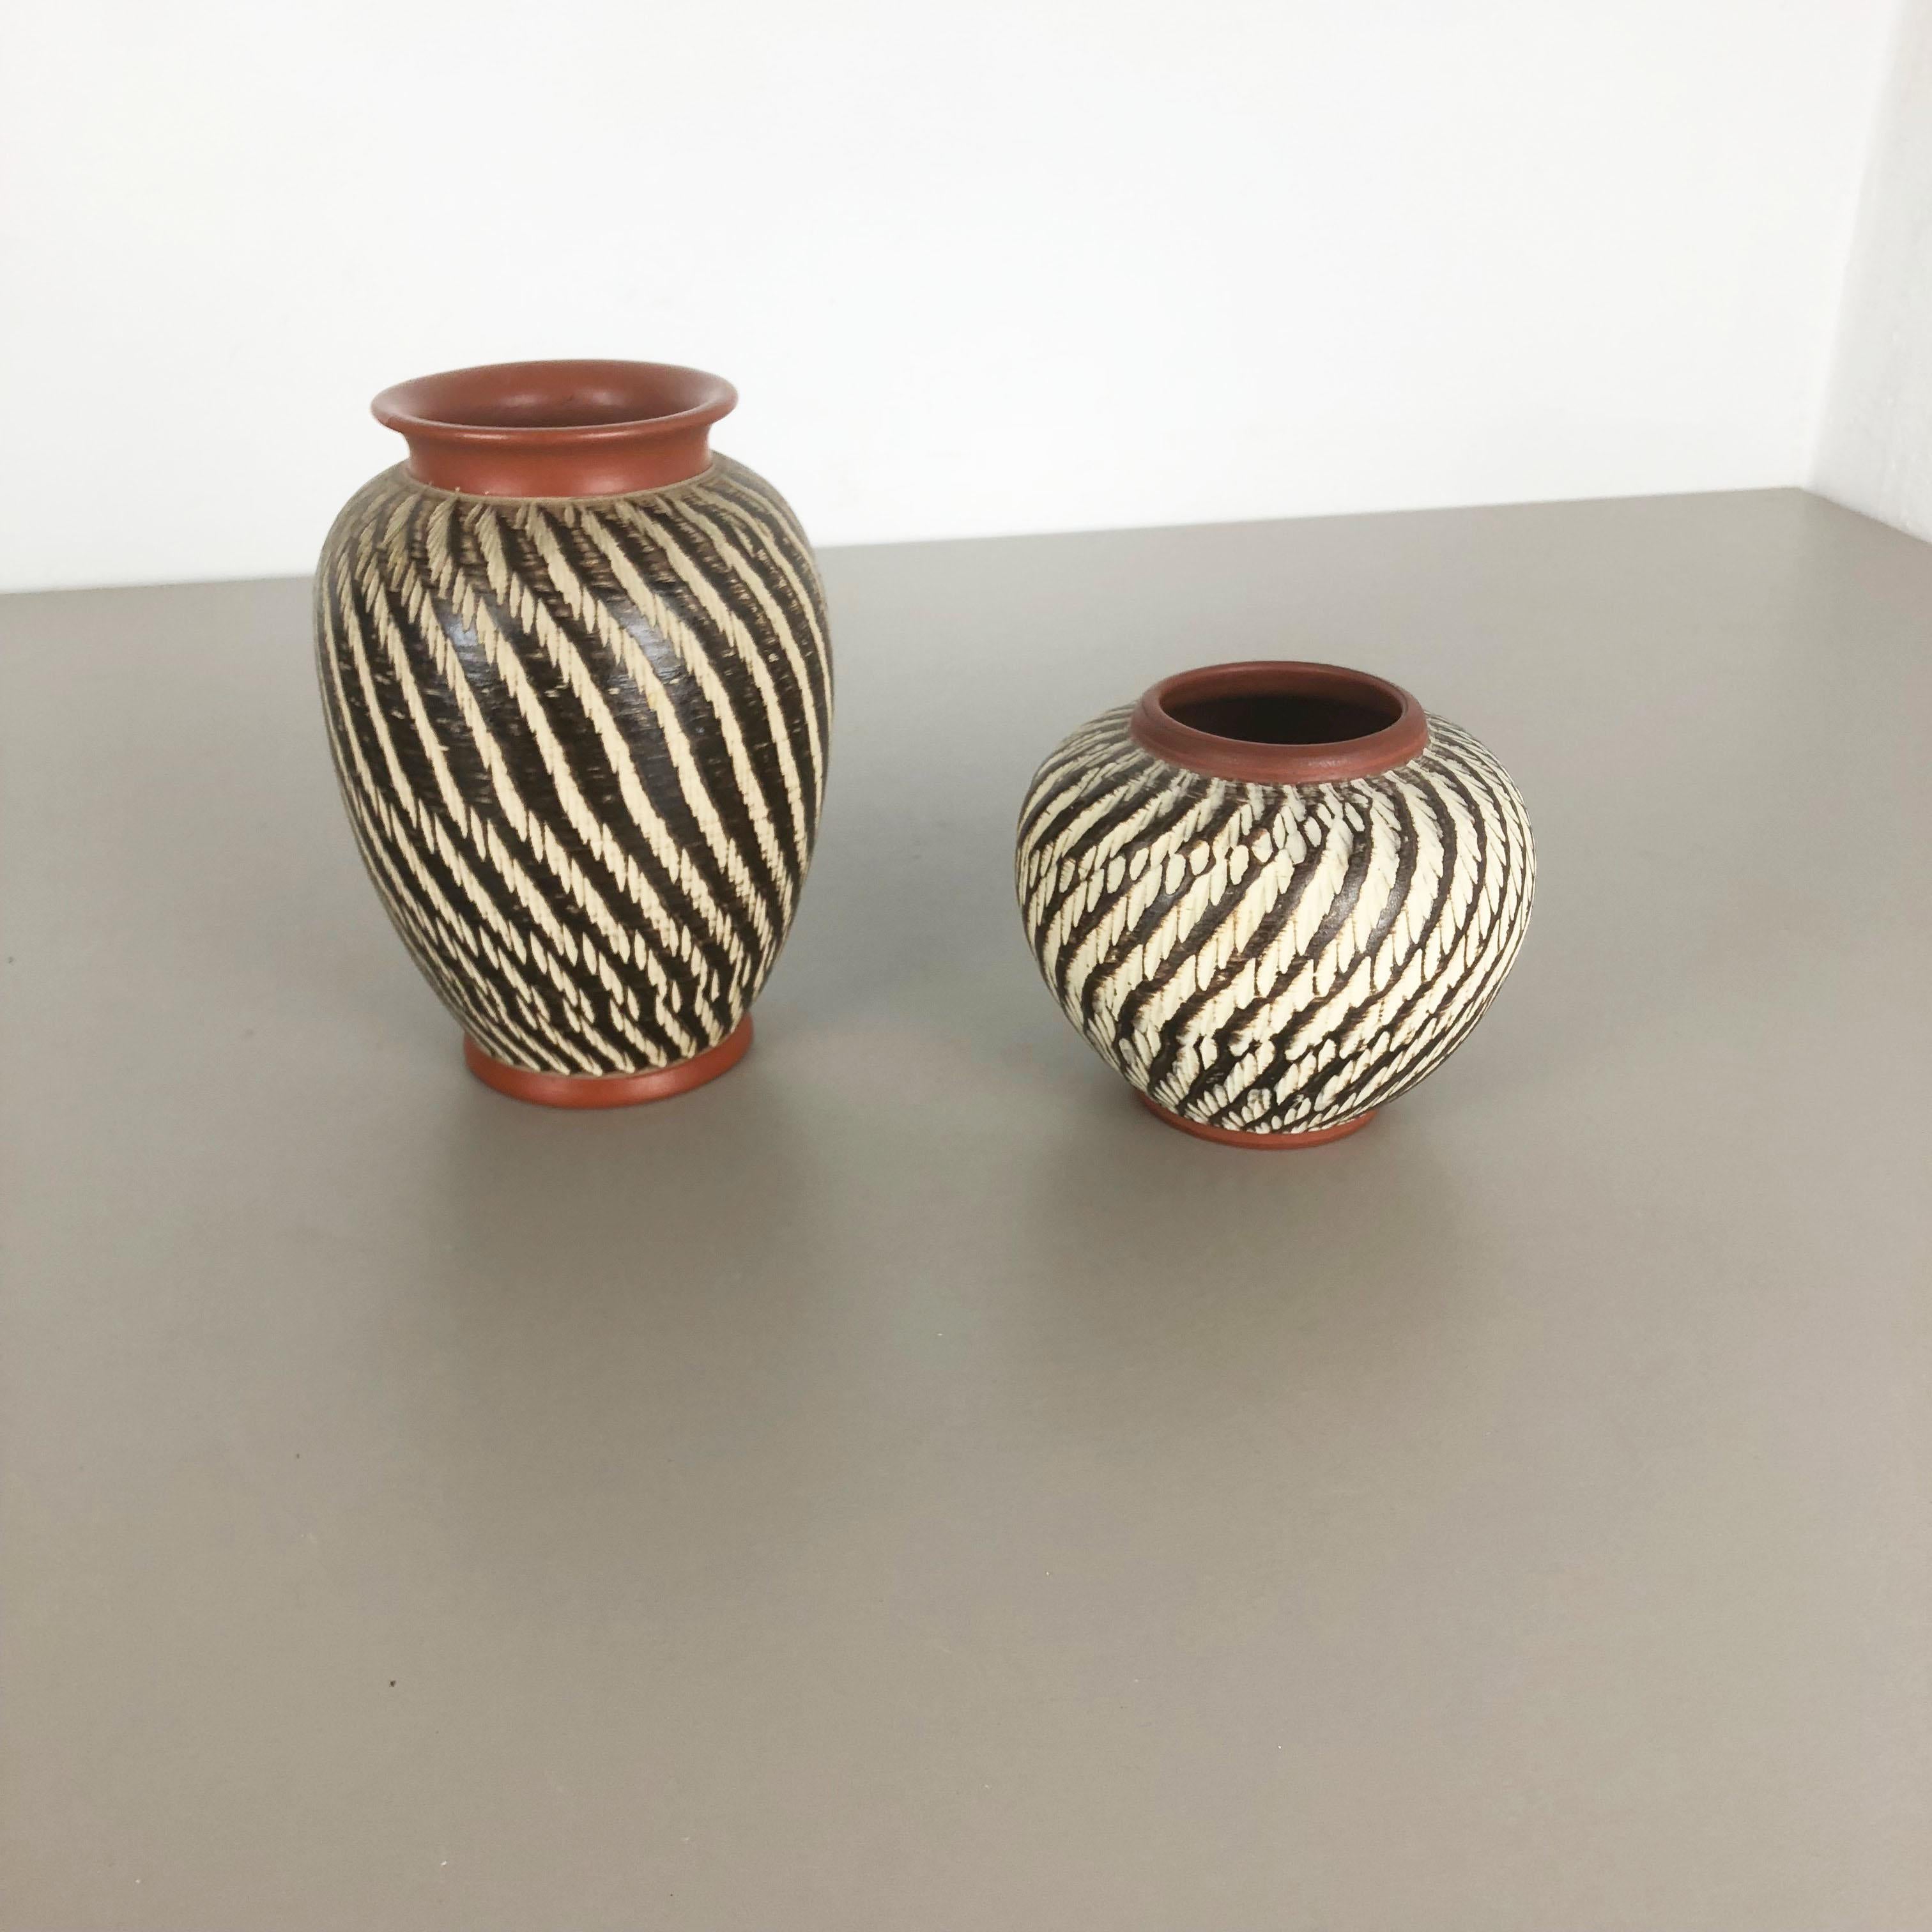 Article :

Ensemble de deux vases abstraits



Producteur :

WEKARA, Allemagne



Décennie :

1960s


Ces vases vintage originaux ont été produits dans les années 1960 en Allemagne. Il est réalisé en céramique avec une illustration